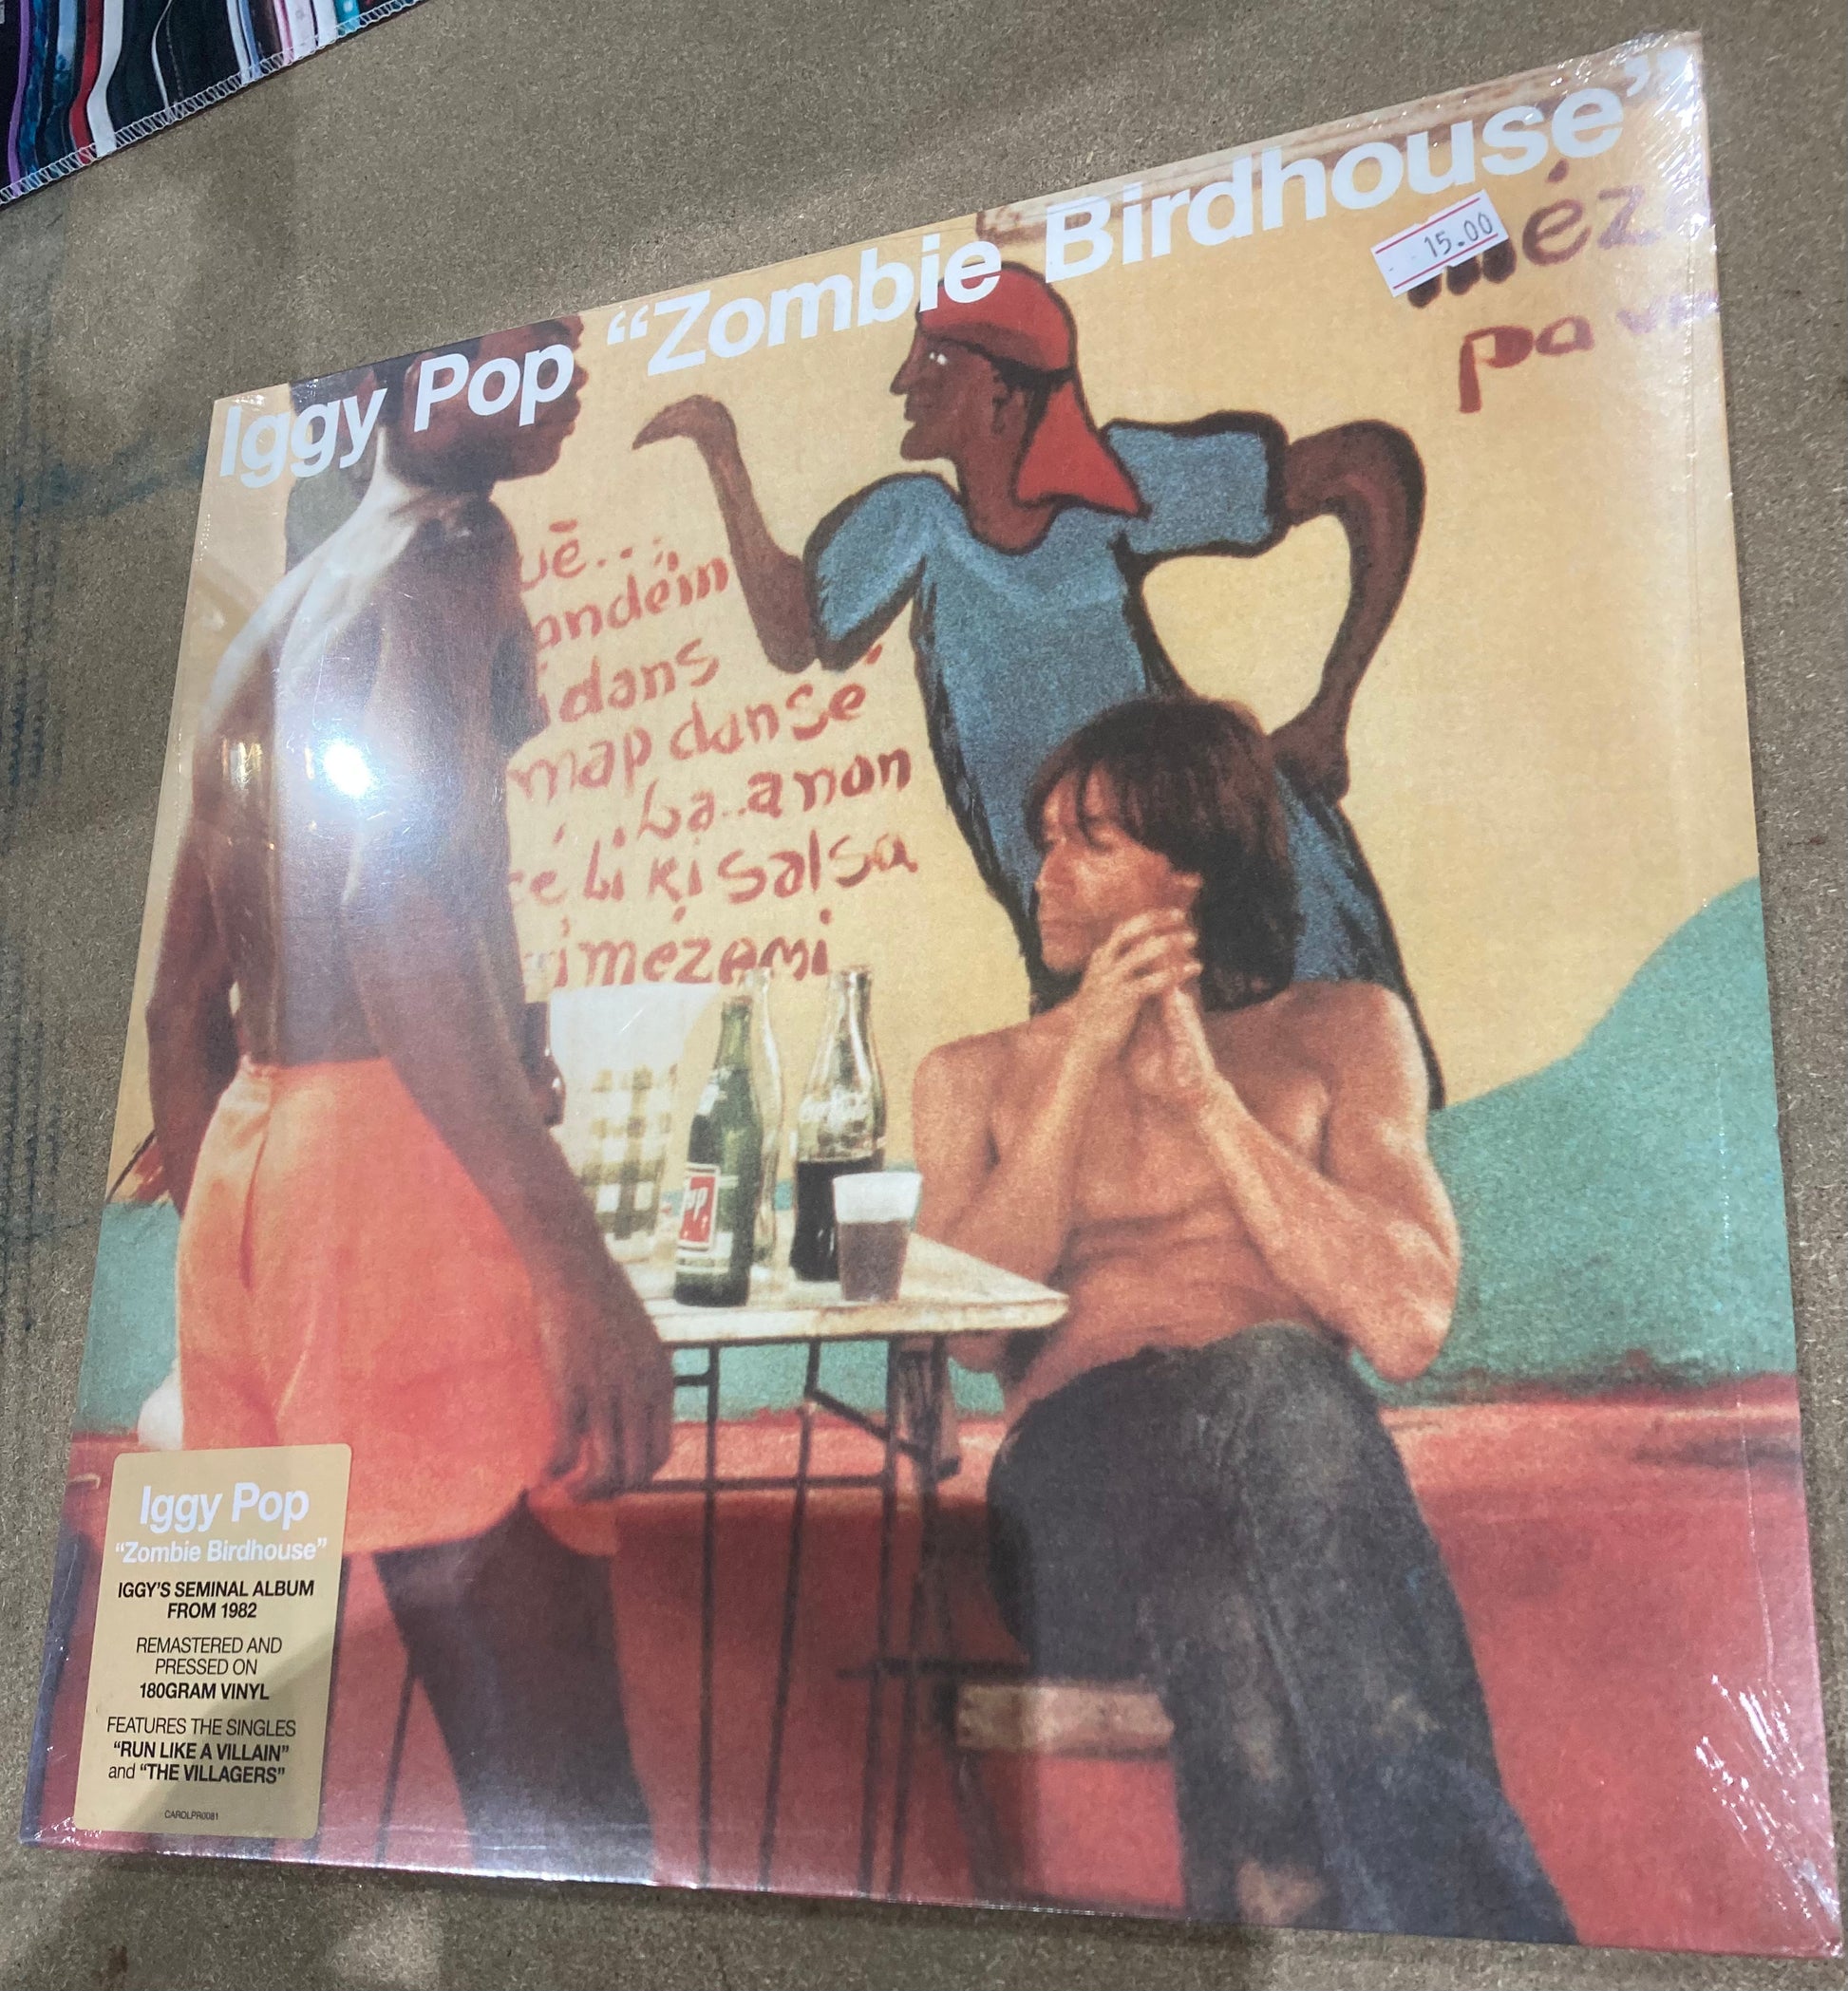 The back of Iggy Pop - Zombie Birdhouse on vinyl